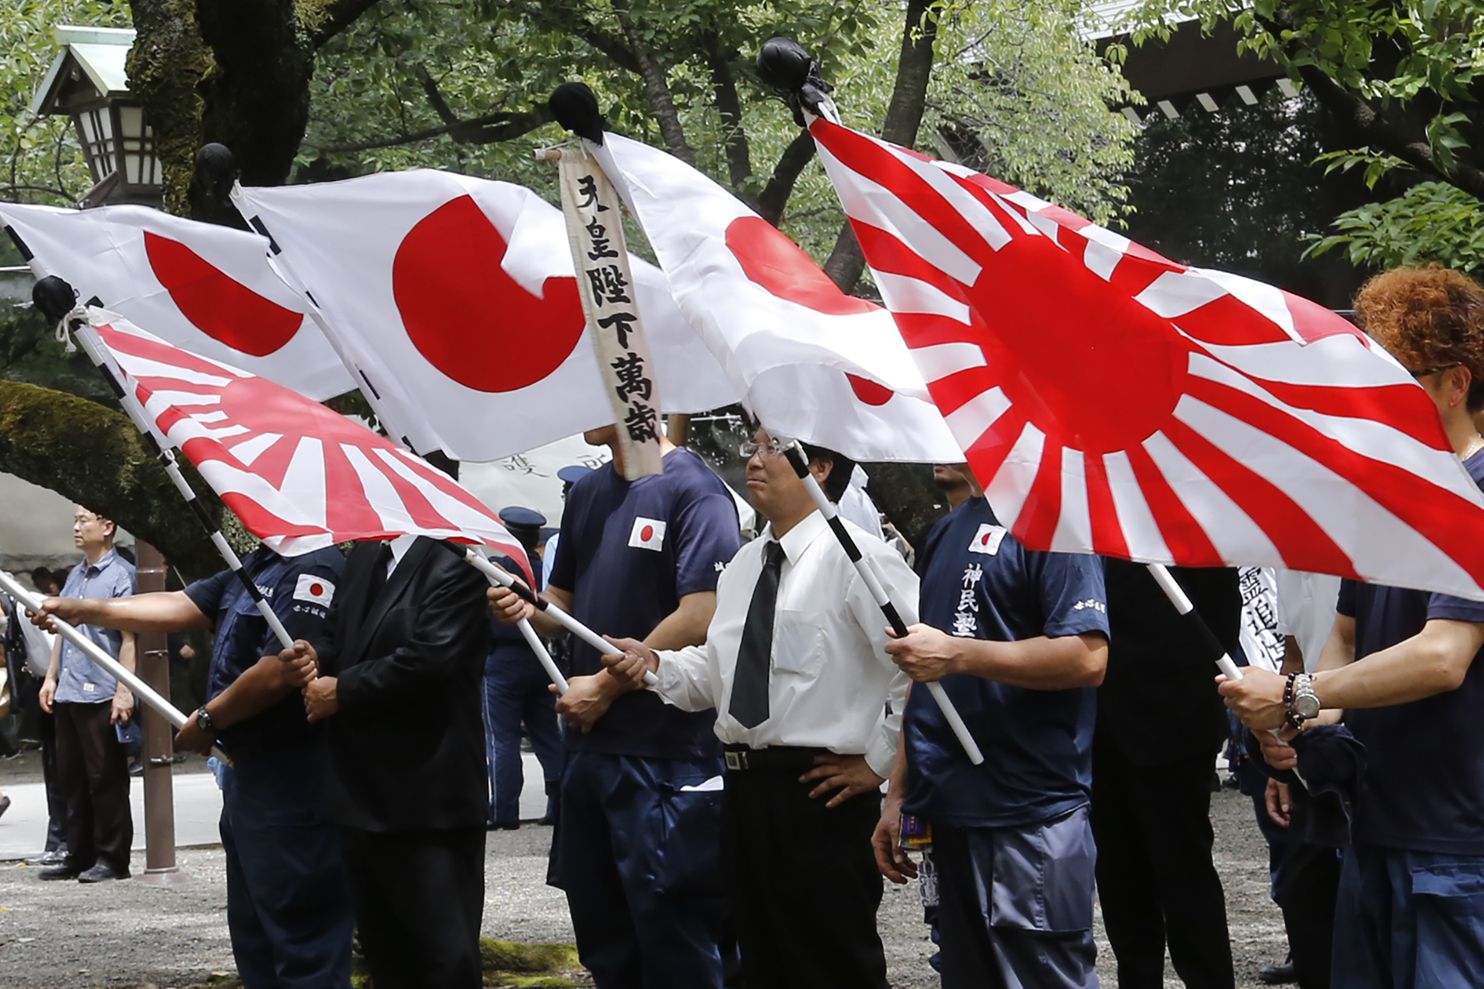 SKorea asks IOC to Ban ‘Rising Sun’ Flag at Tokyo Olympics